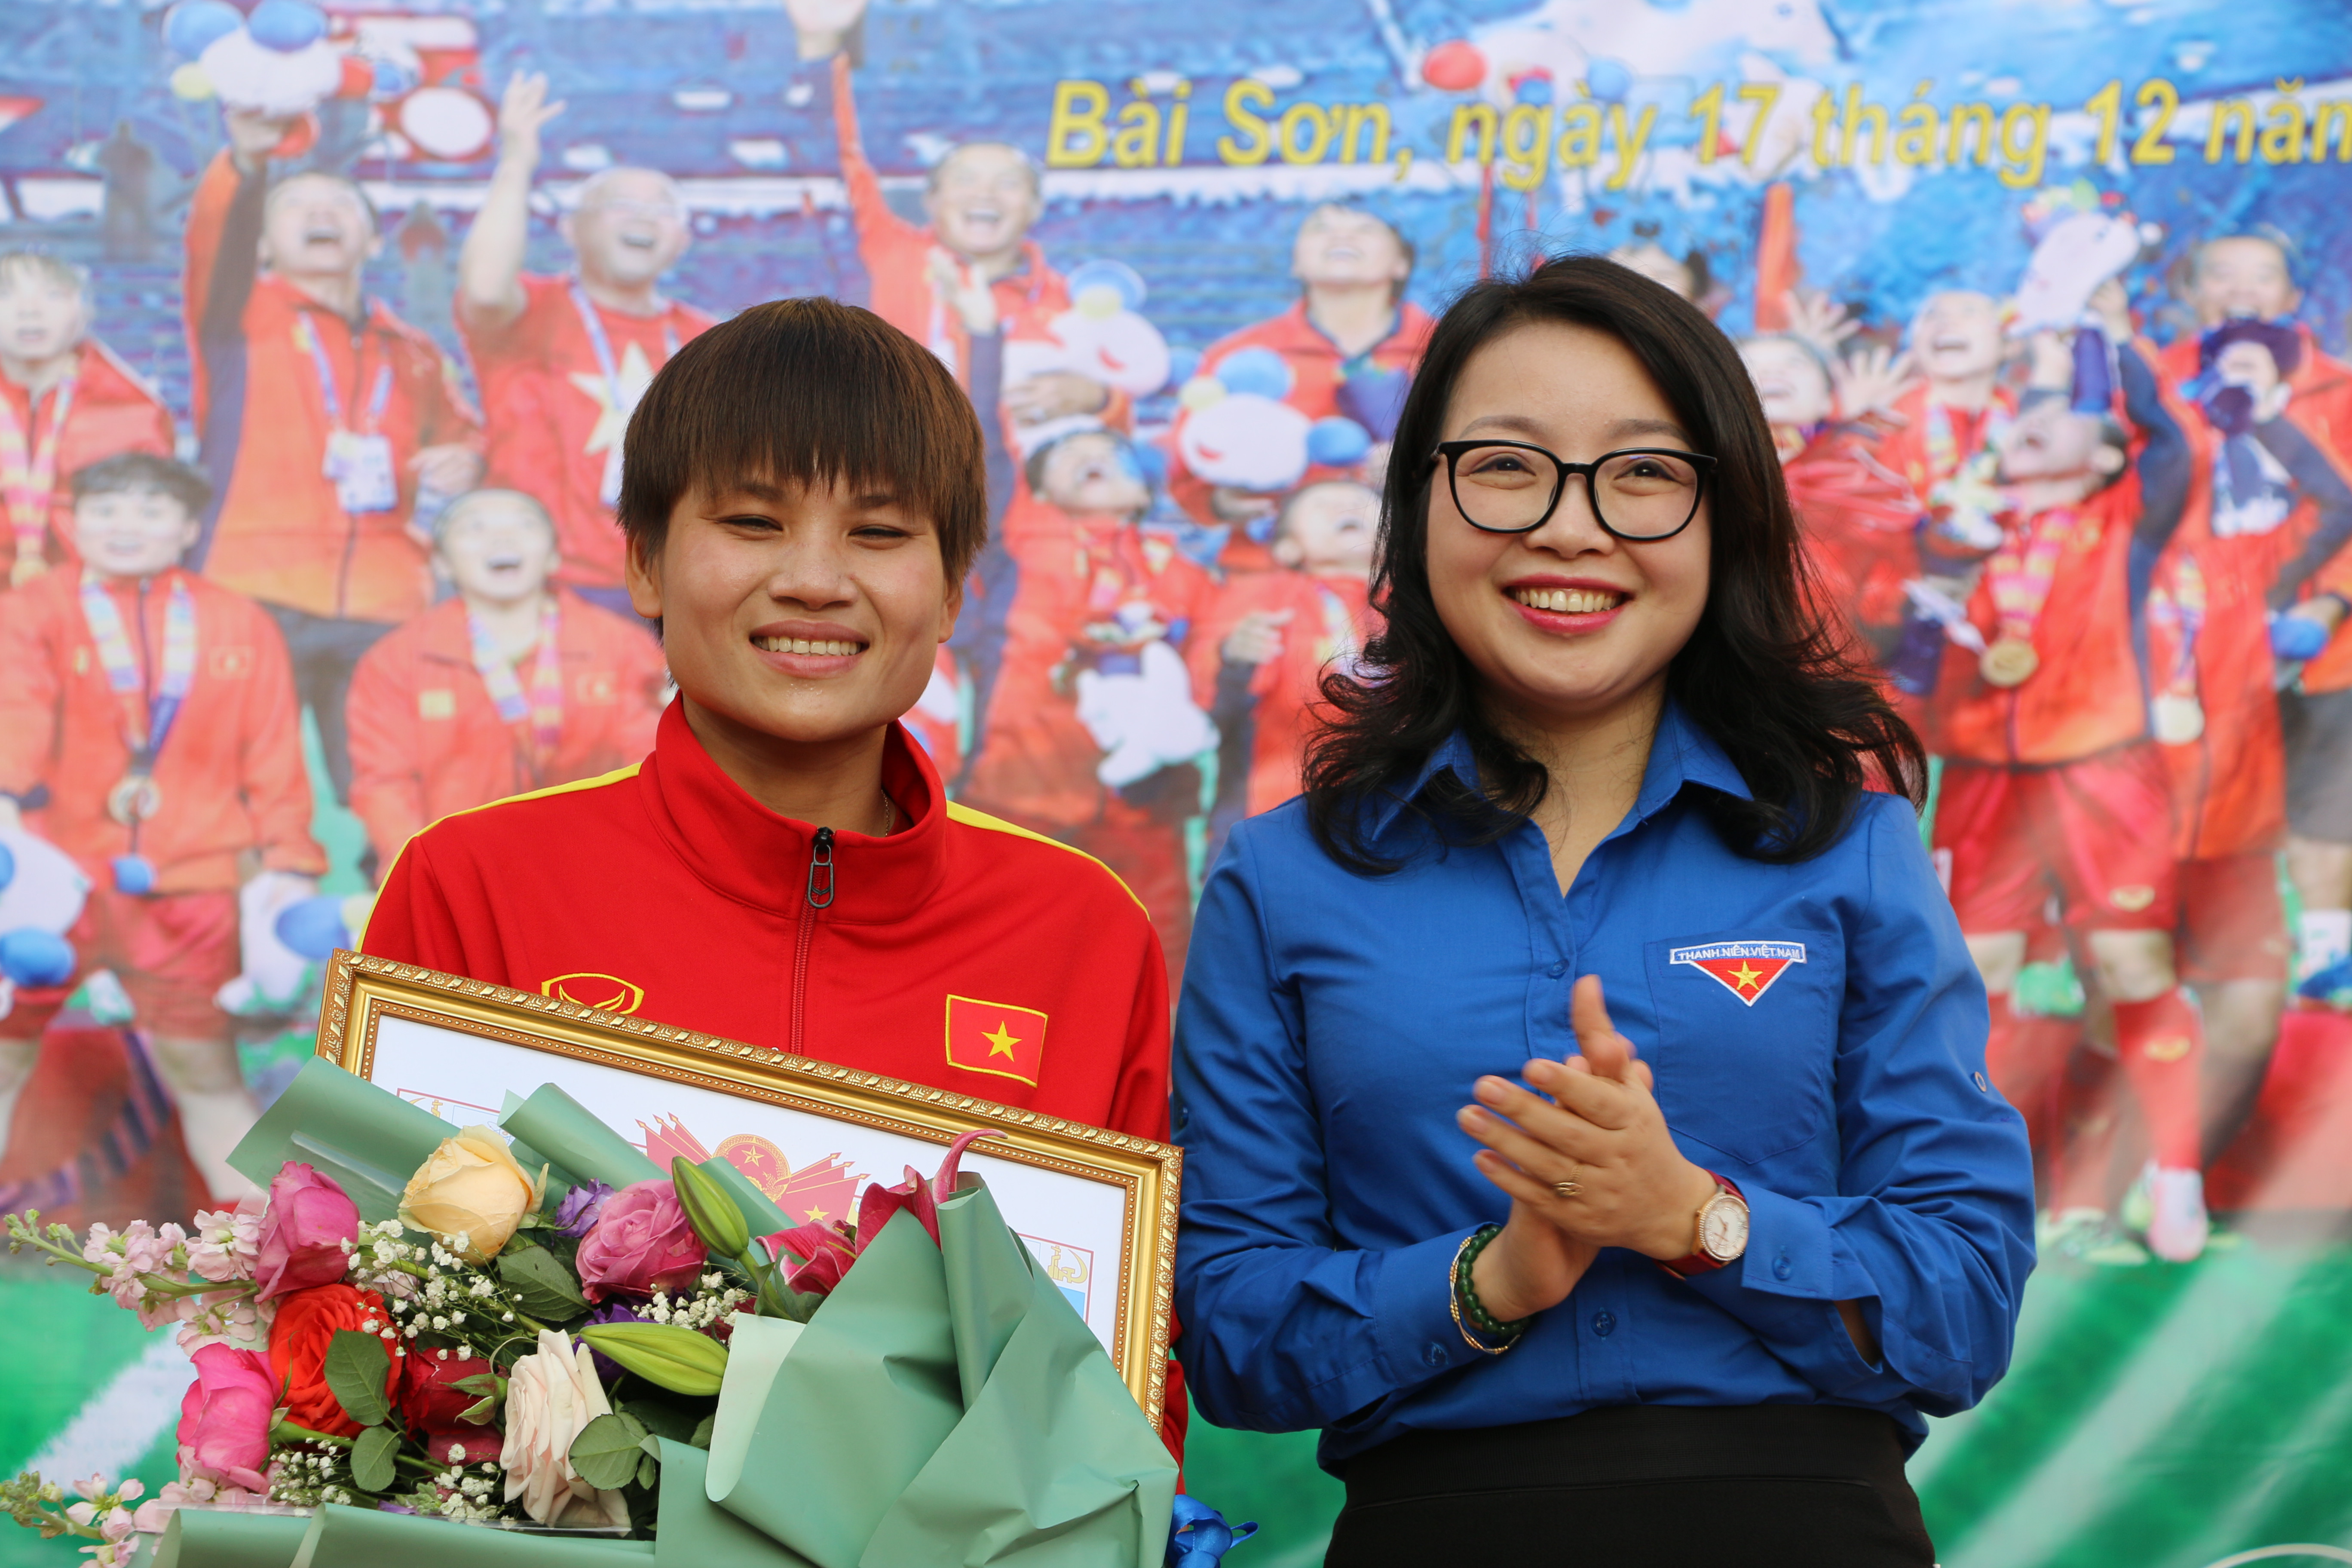 tỉnh đoàn Nghệ An, Hội phụ nữ tỉnh Nghệ An đã trao giấy khen và tặng hoa chúc mừng.